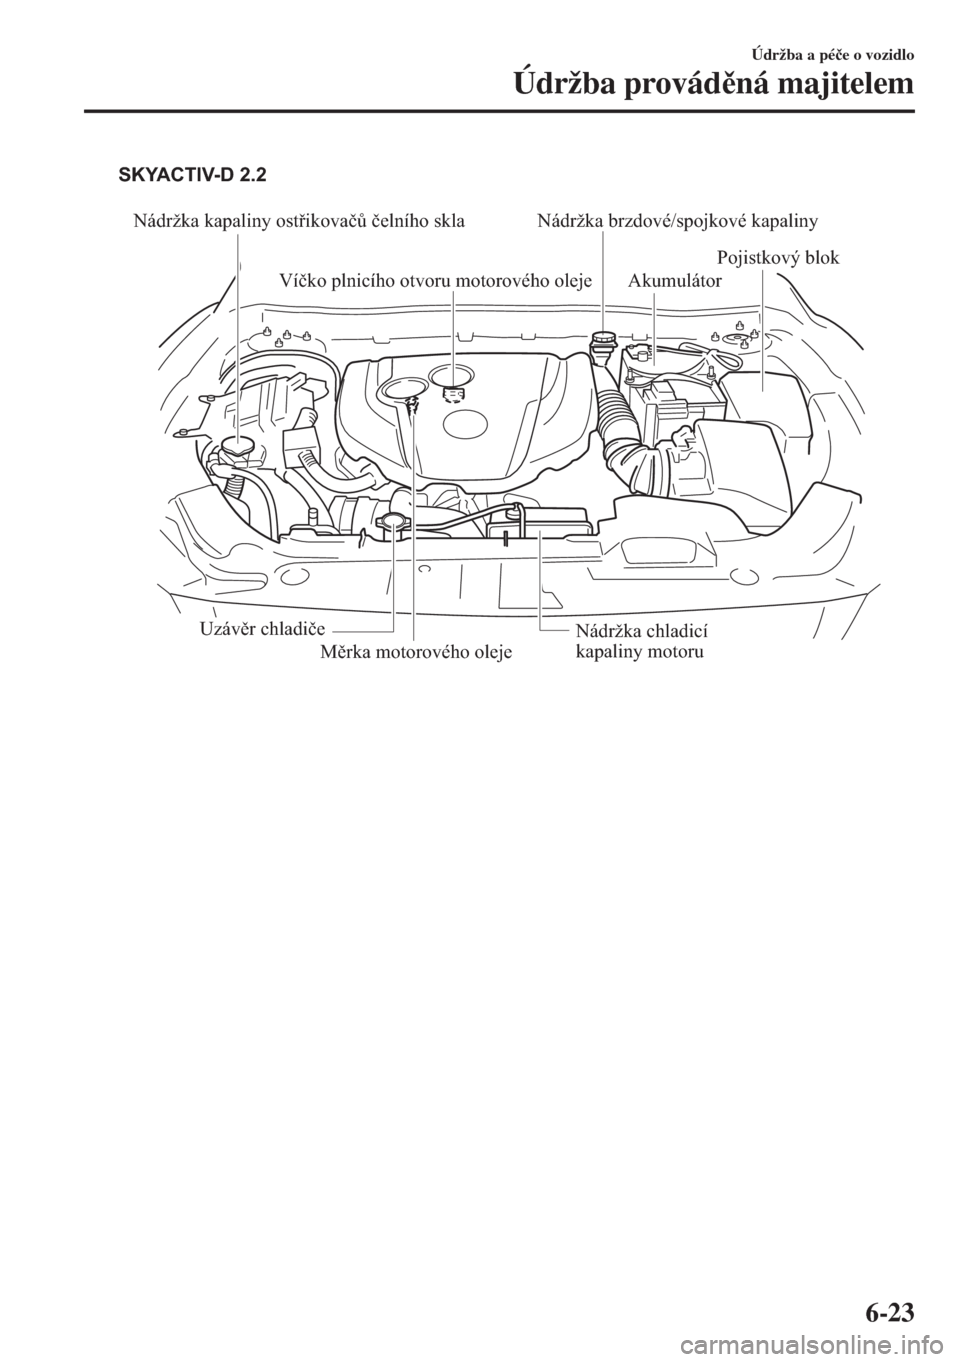 MAZDA MODEL 6 2018  Návod k obsluze (in Czech) Nádržka kapaliny ostřikovačů čelního skla
Víčko plnicího otvoru motorového oleje
Měrka motorového olejeAkumulátor
Pojistkový blok
Uzávěr chladiče
Nádržka chladicí 
kapaliny motoru